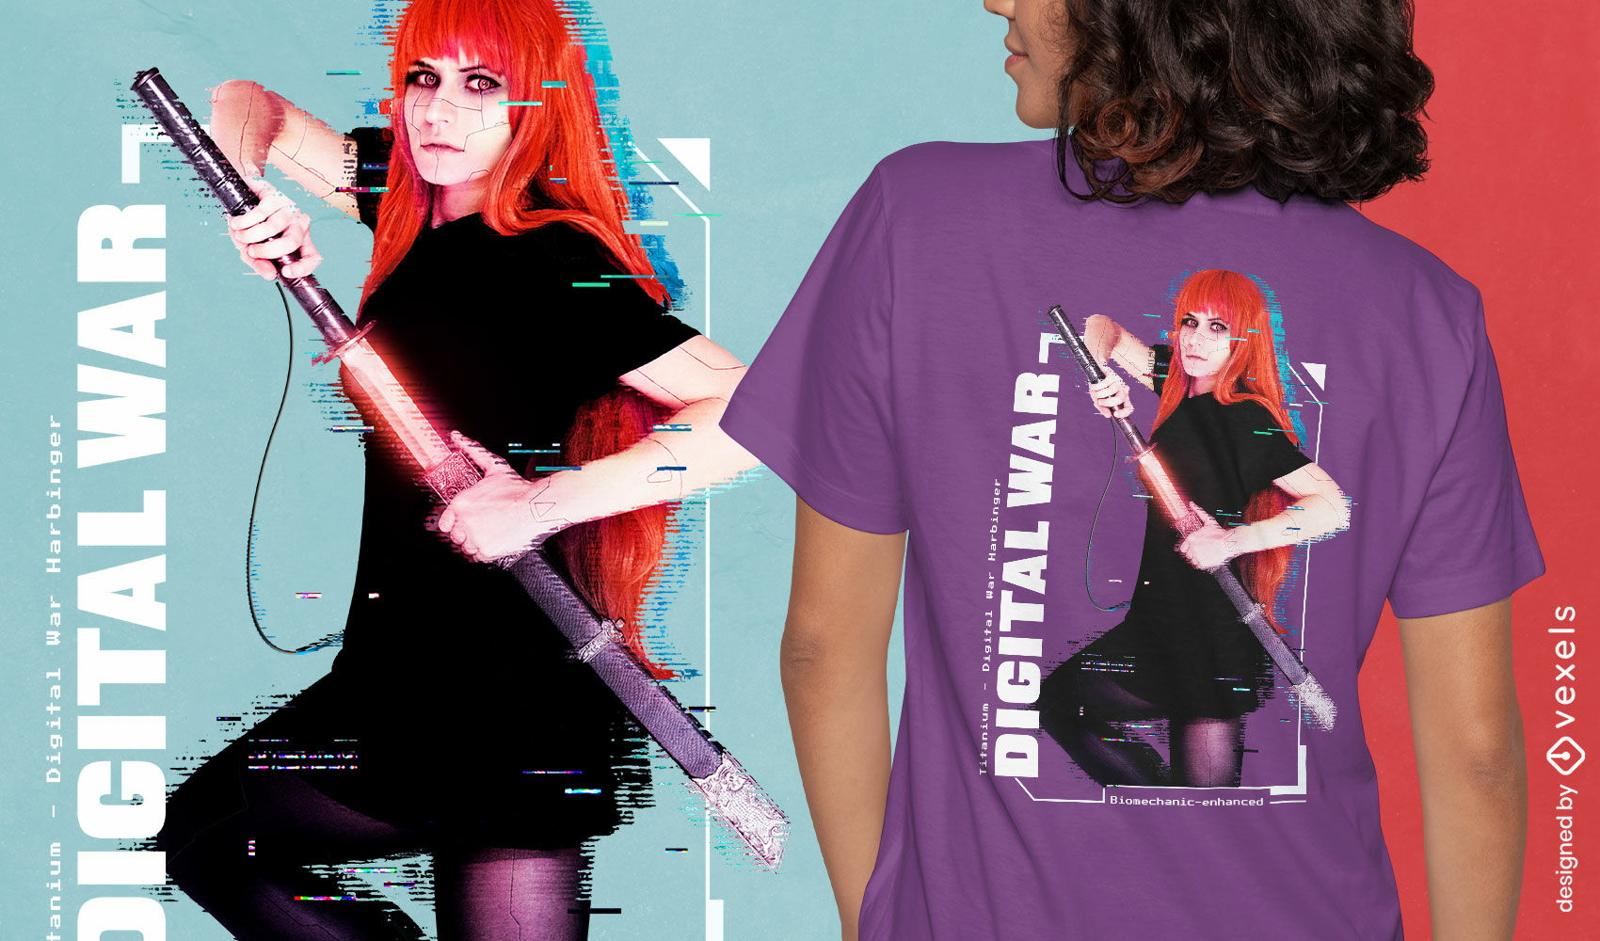 Digital warrior woman t-shirt design